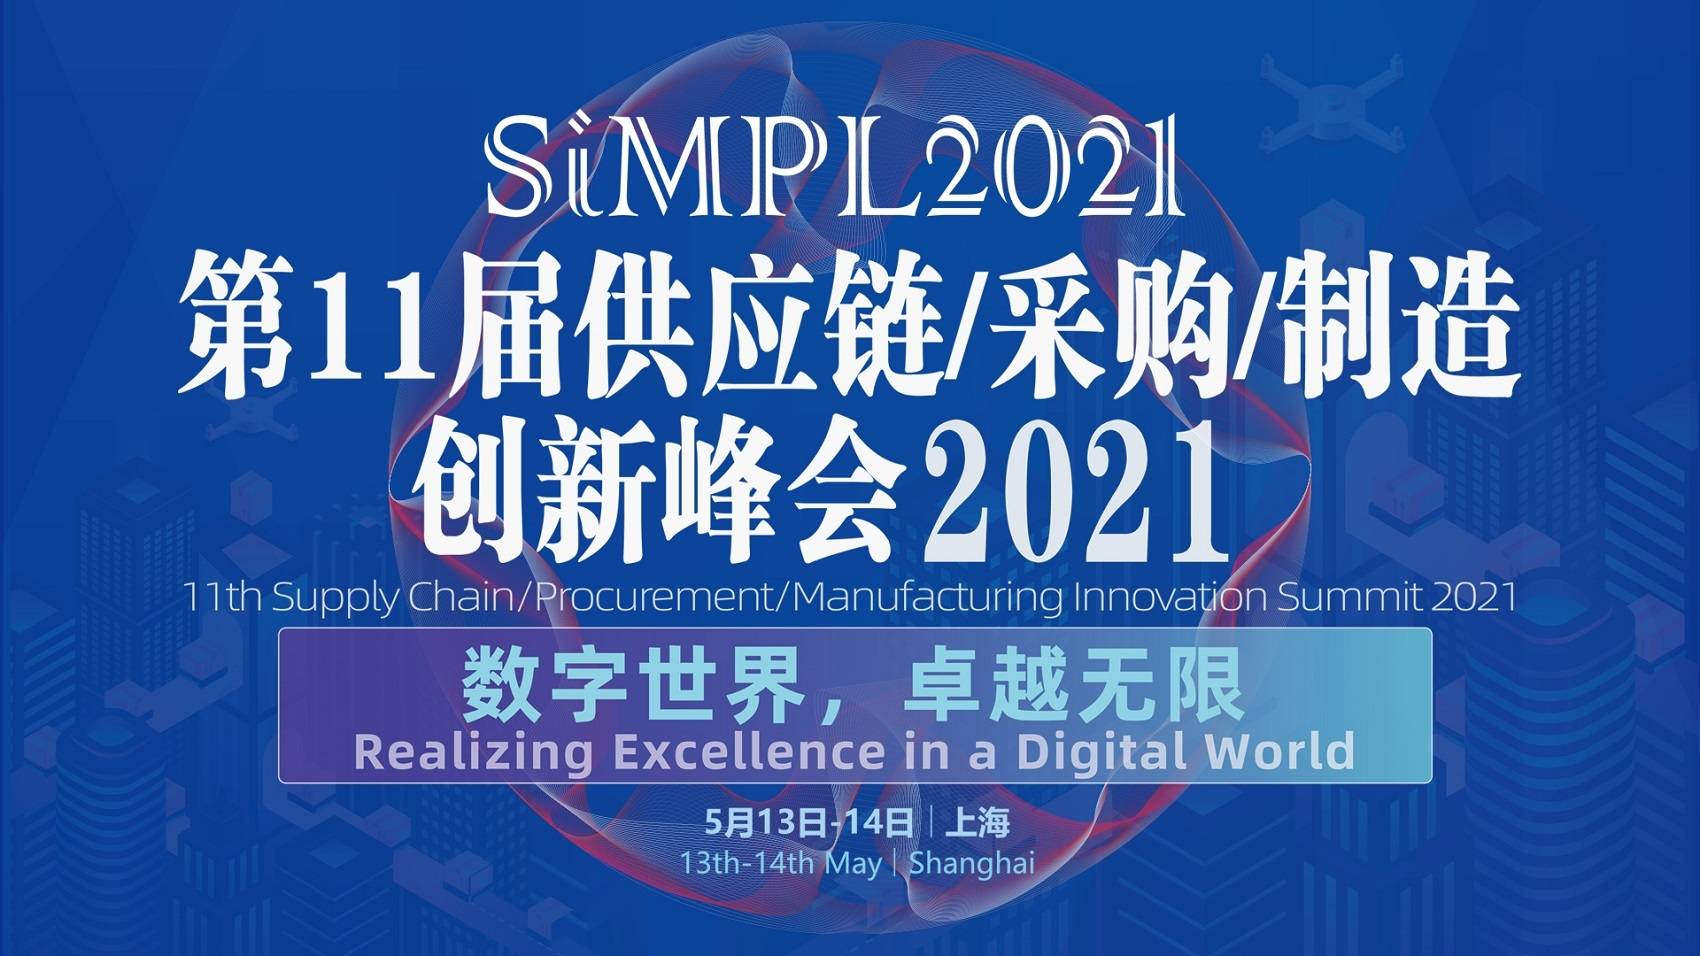 SiMPL2021 第11届供应链物流/采购/制造创新峰会